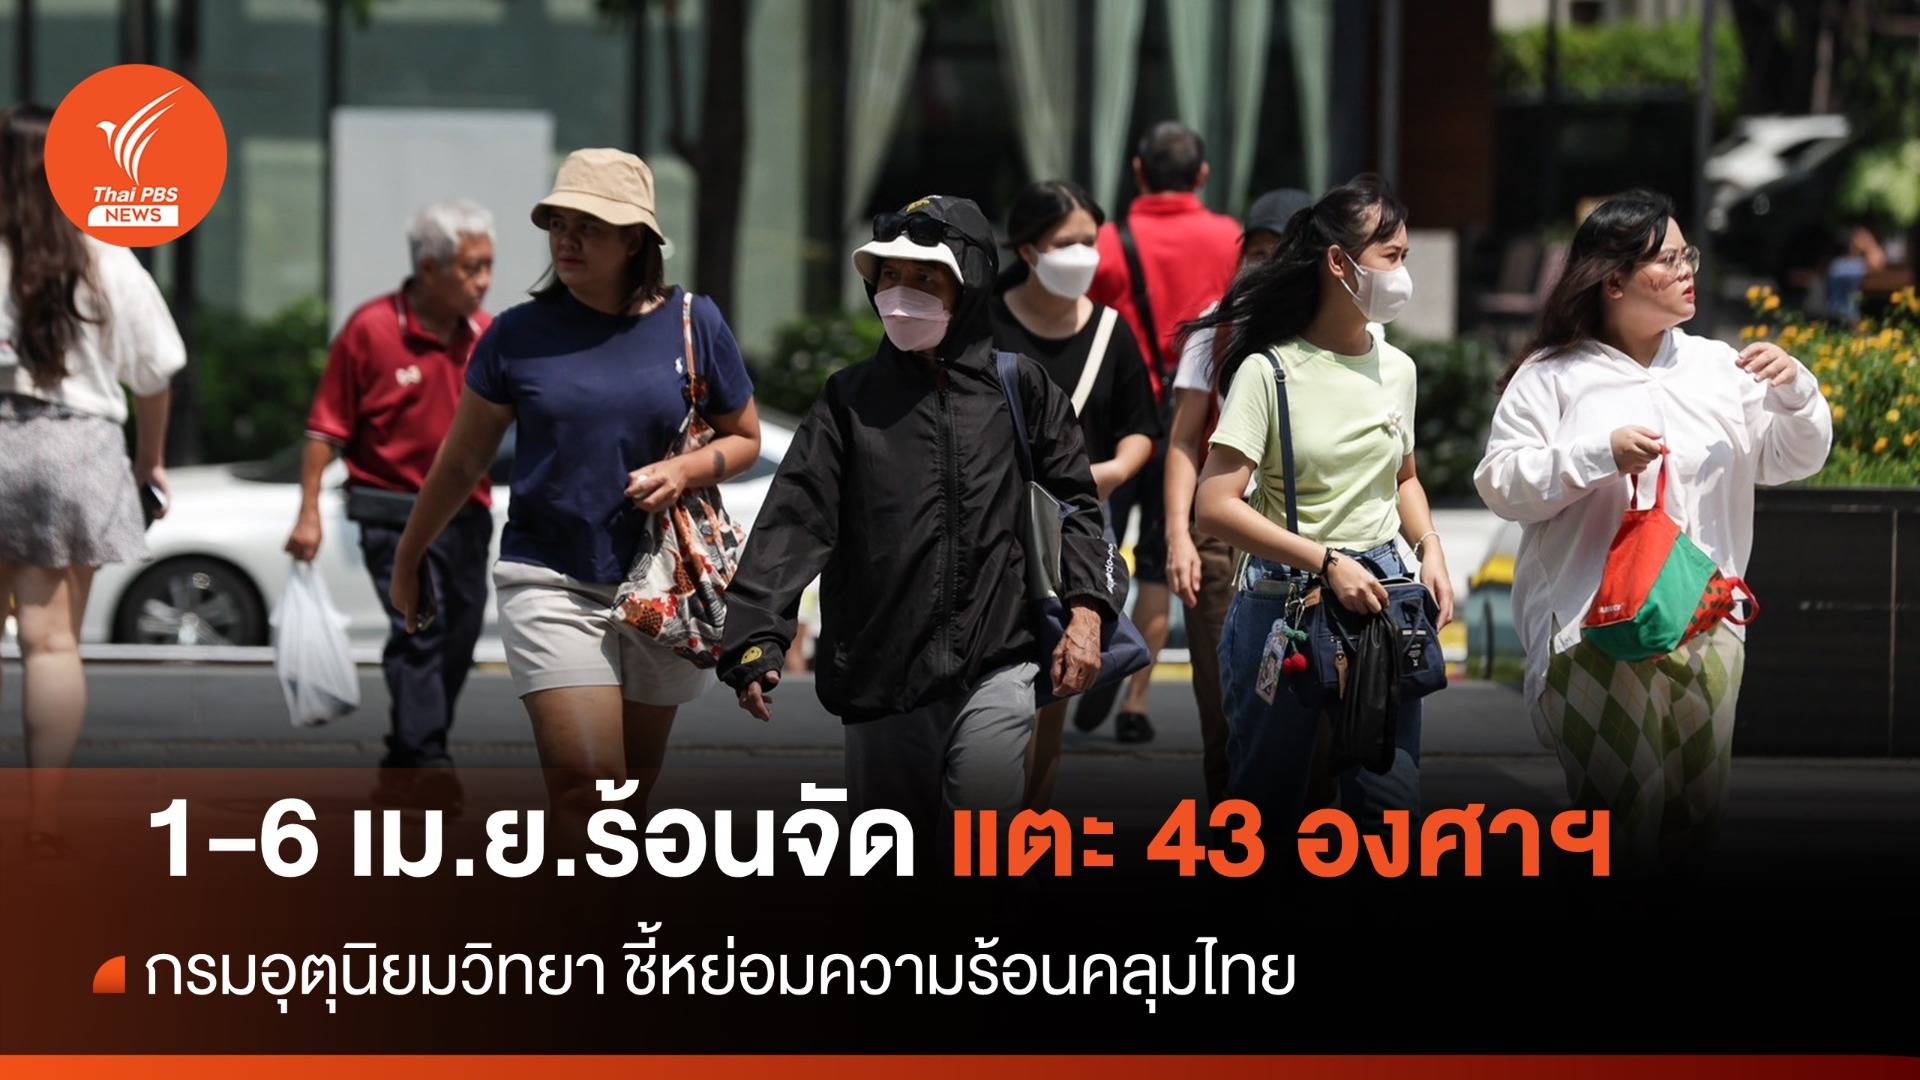 หย่อมความร้อนคลุมไทย 7 วันร้อนจัดแตะ 43 องศาฯ